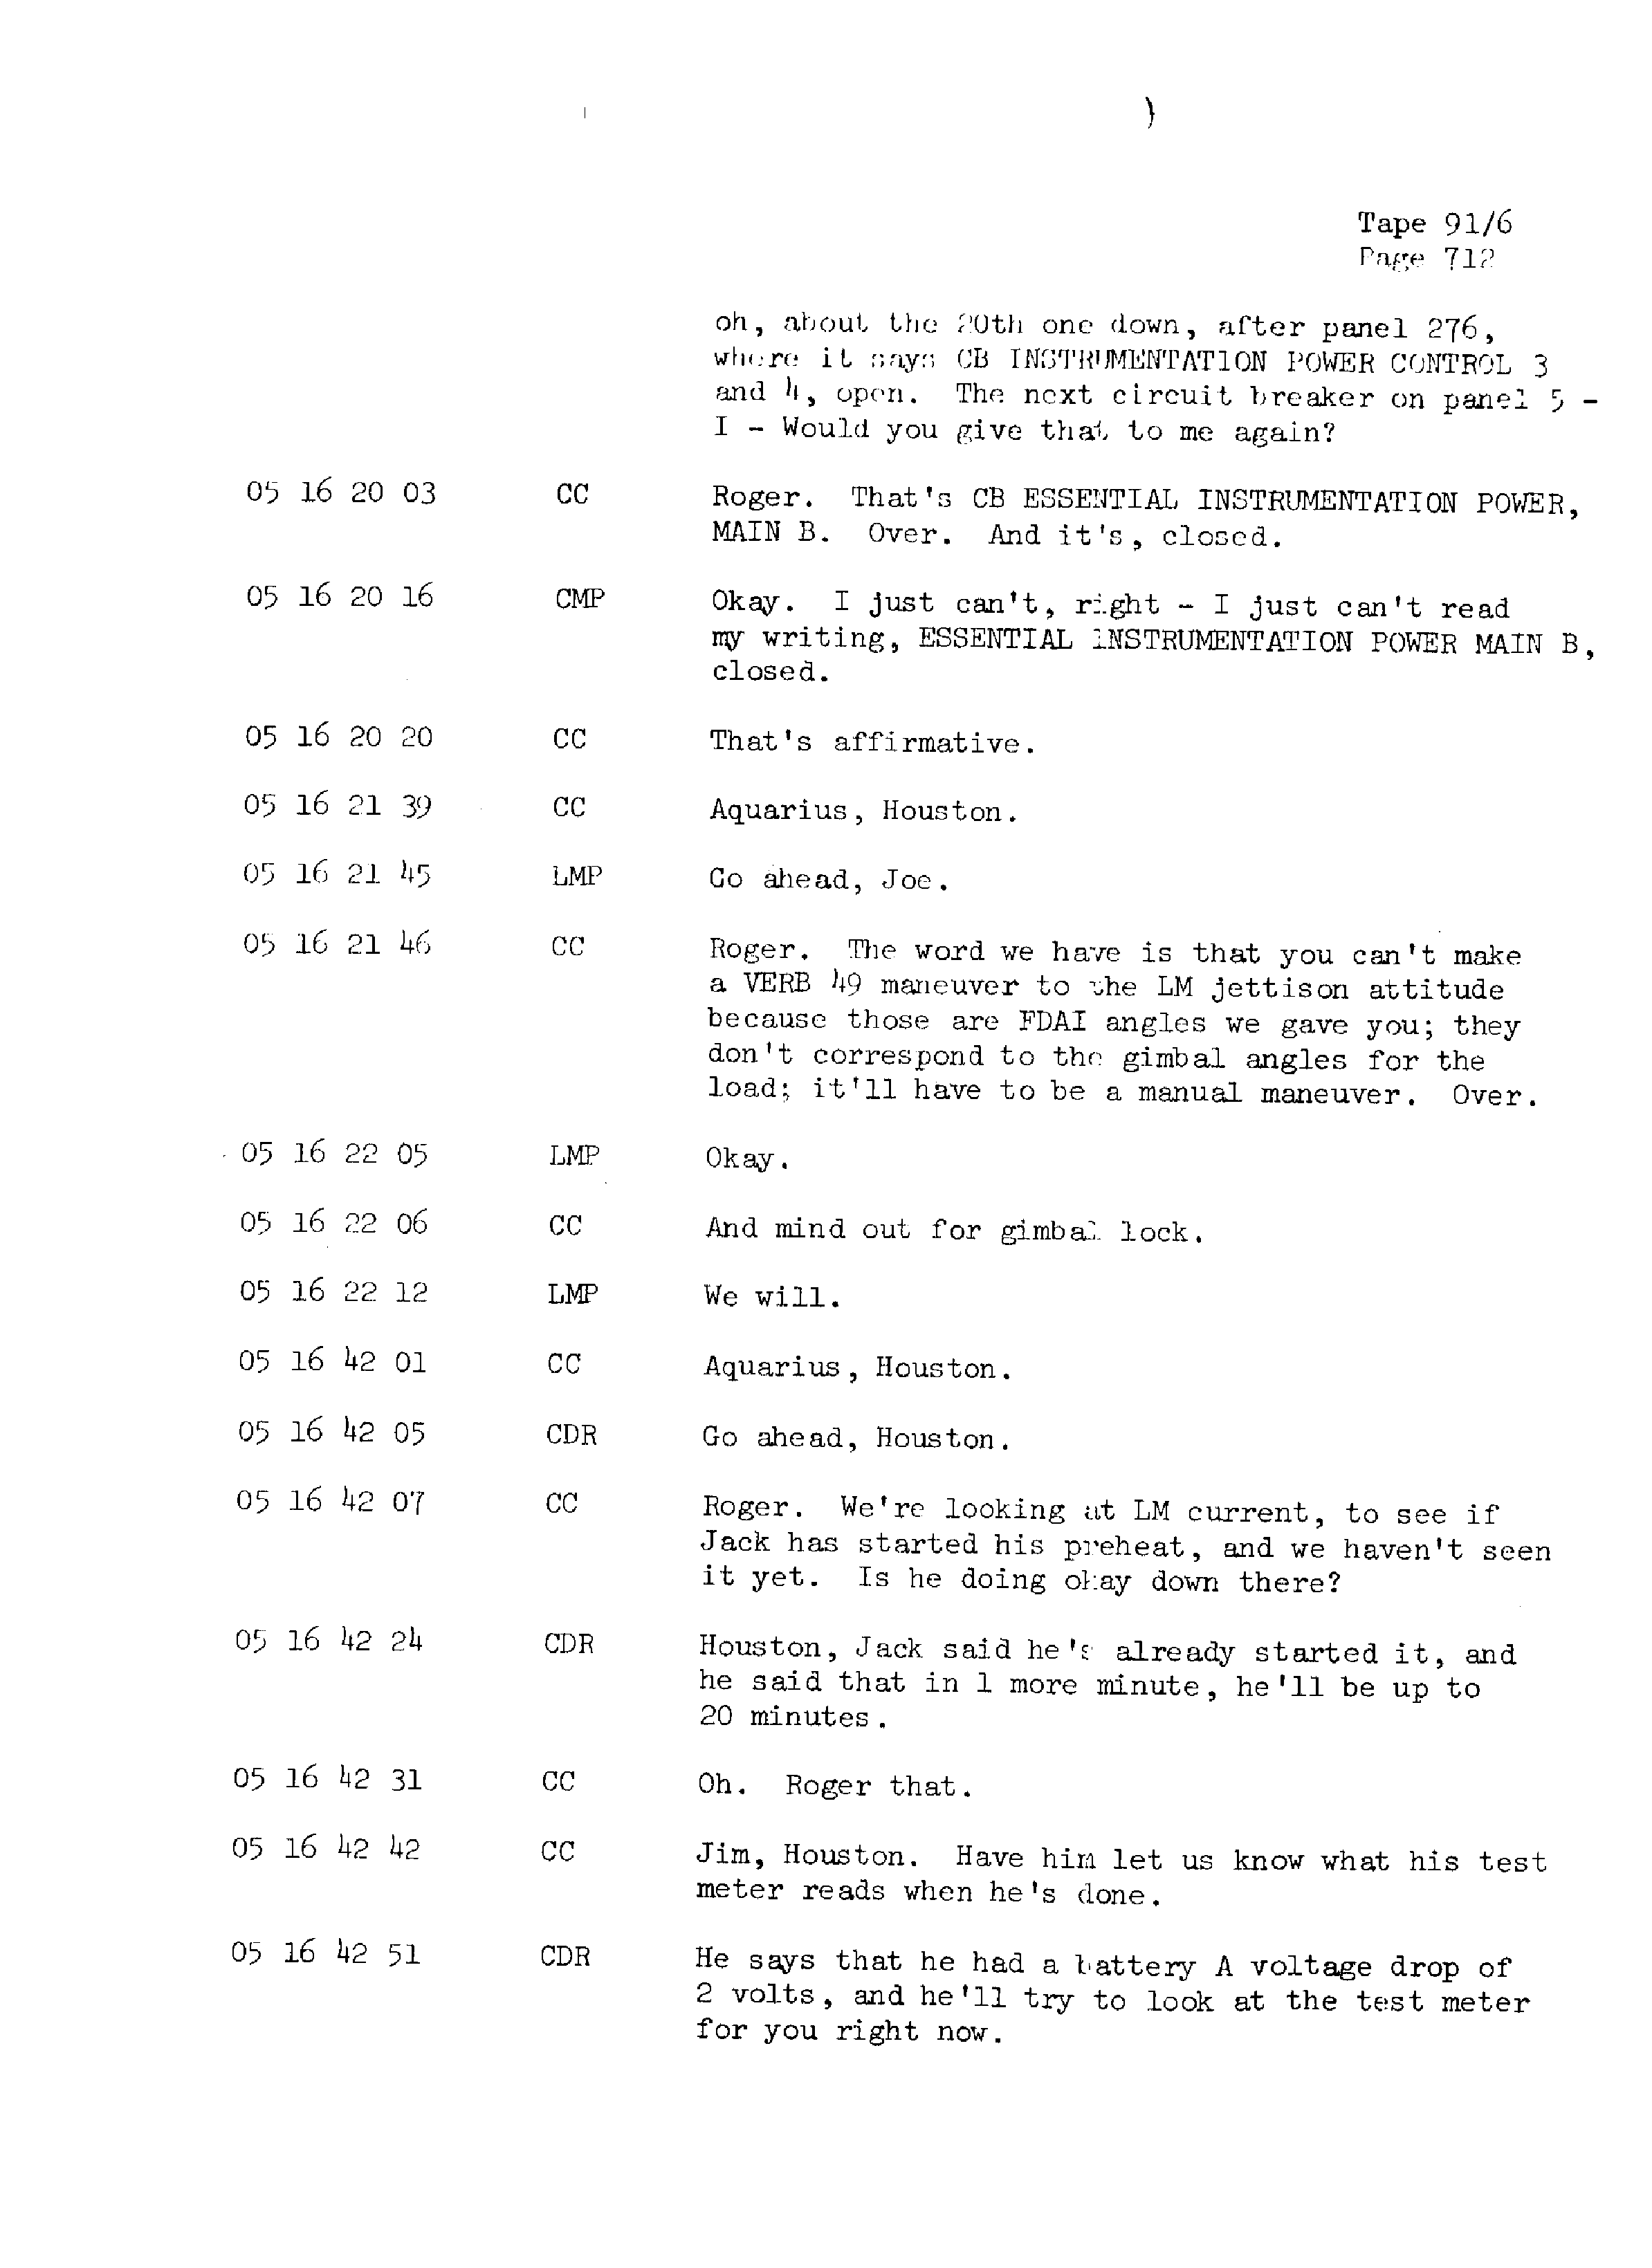 Page 719 of Apollo 13’s original transcript